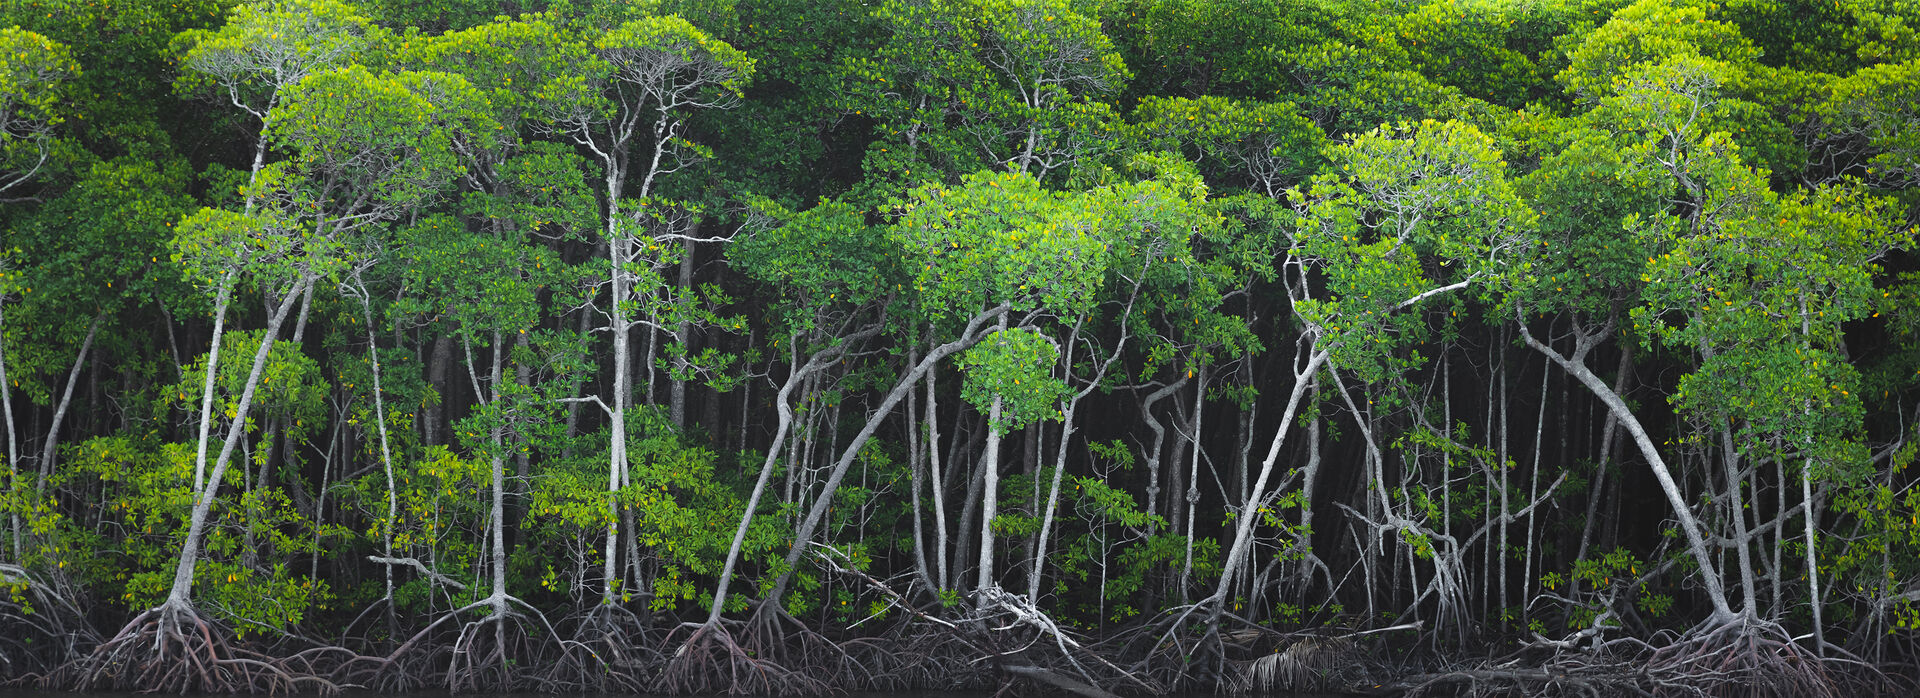 Mangrove forest of Port Douglas